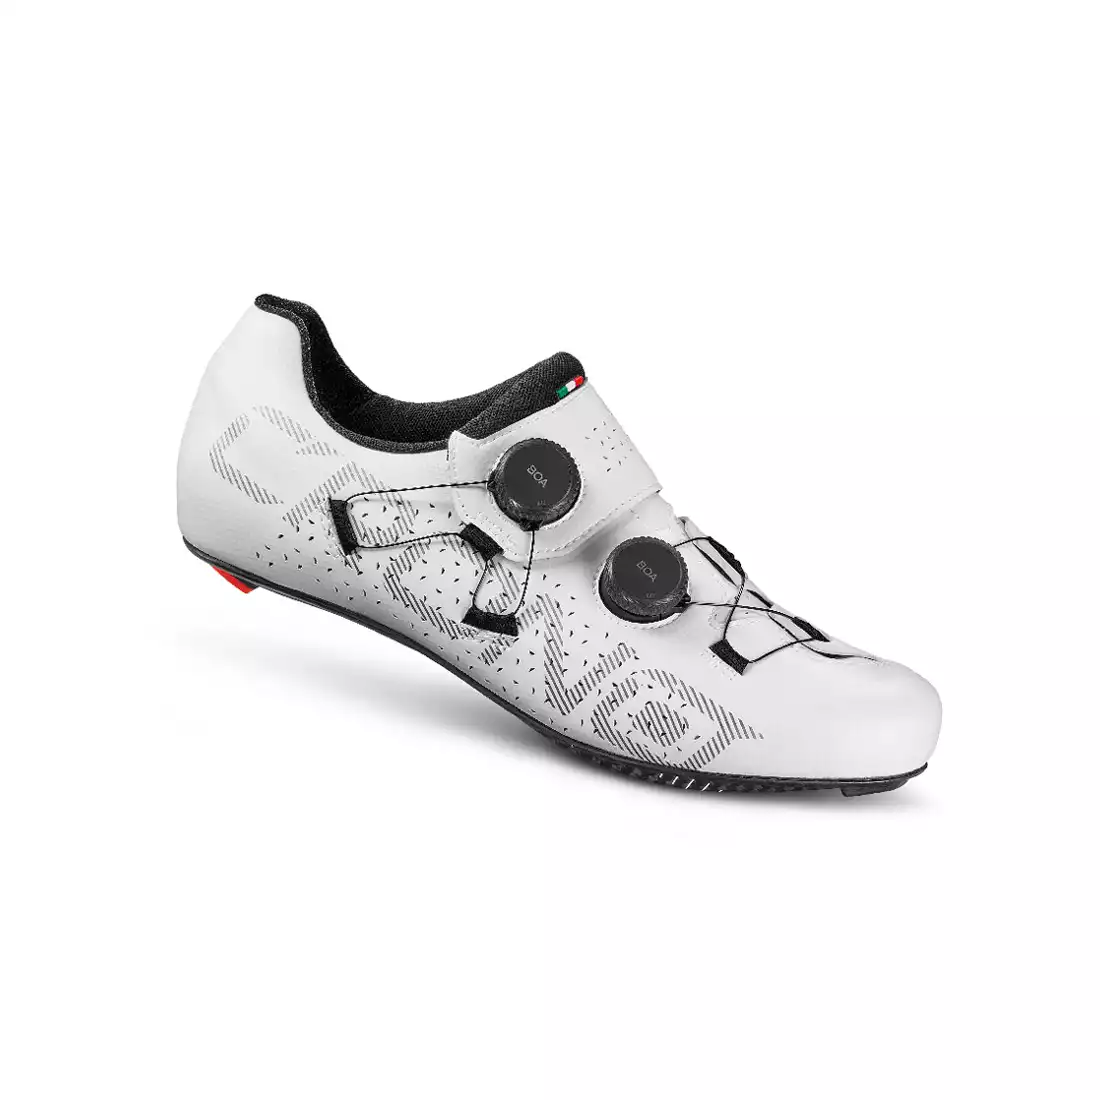 CRONO CR-1 Rennradschuhe, Carbon, weiß